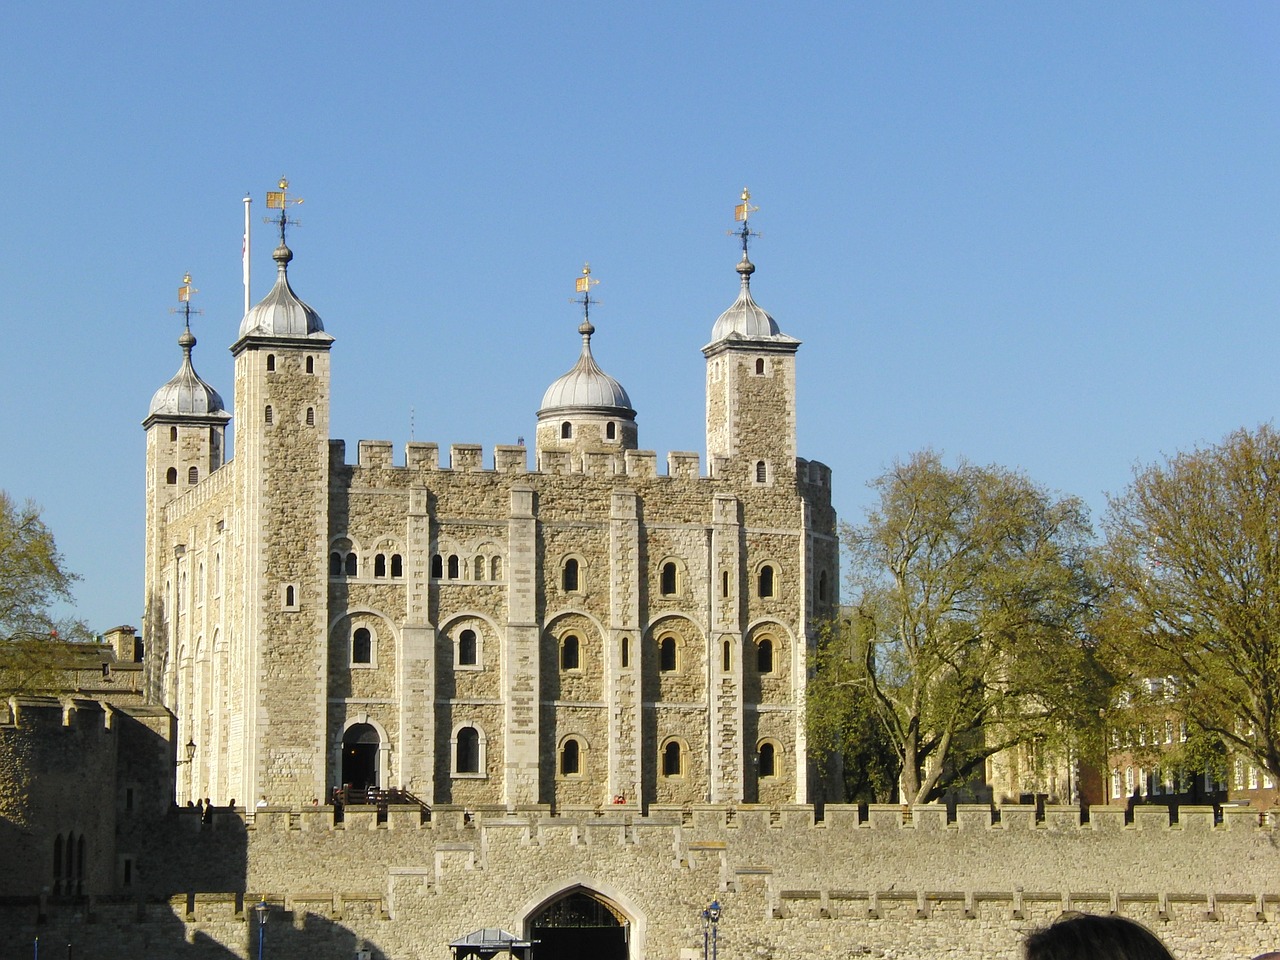 Slika prikazuje londonsku znamenitost Tower of London – londonski toranj.